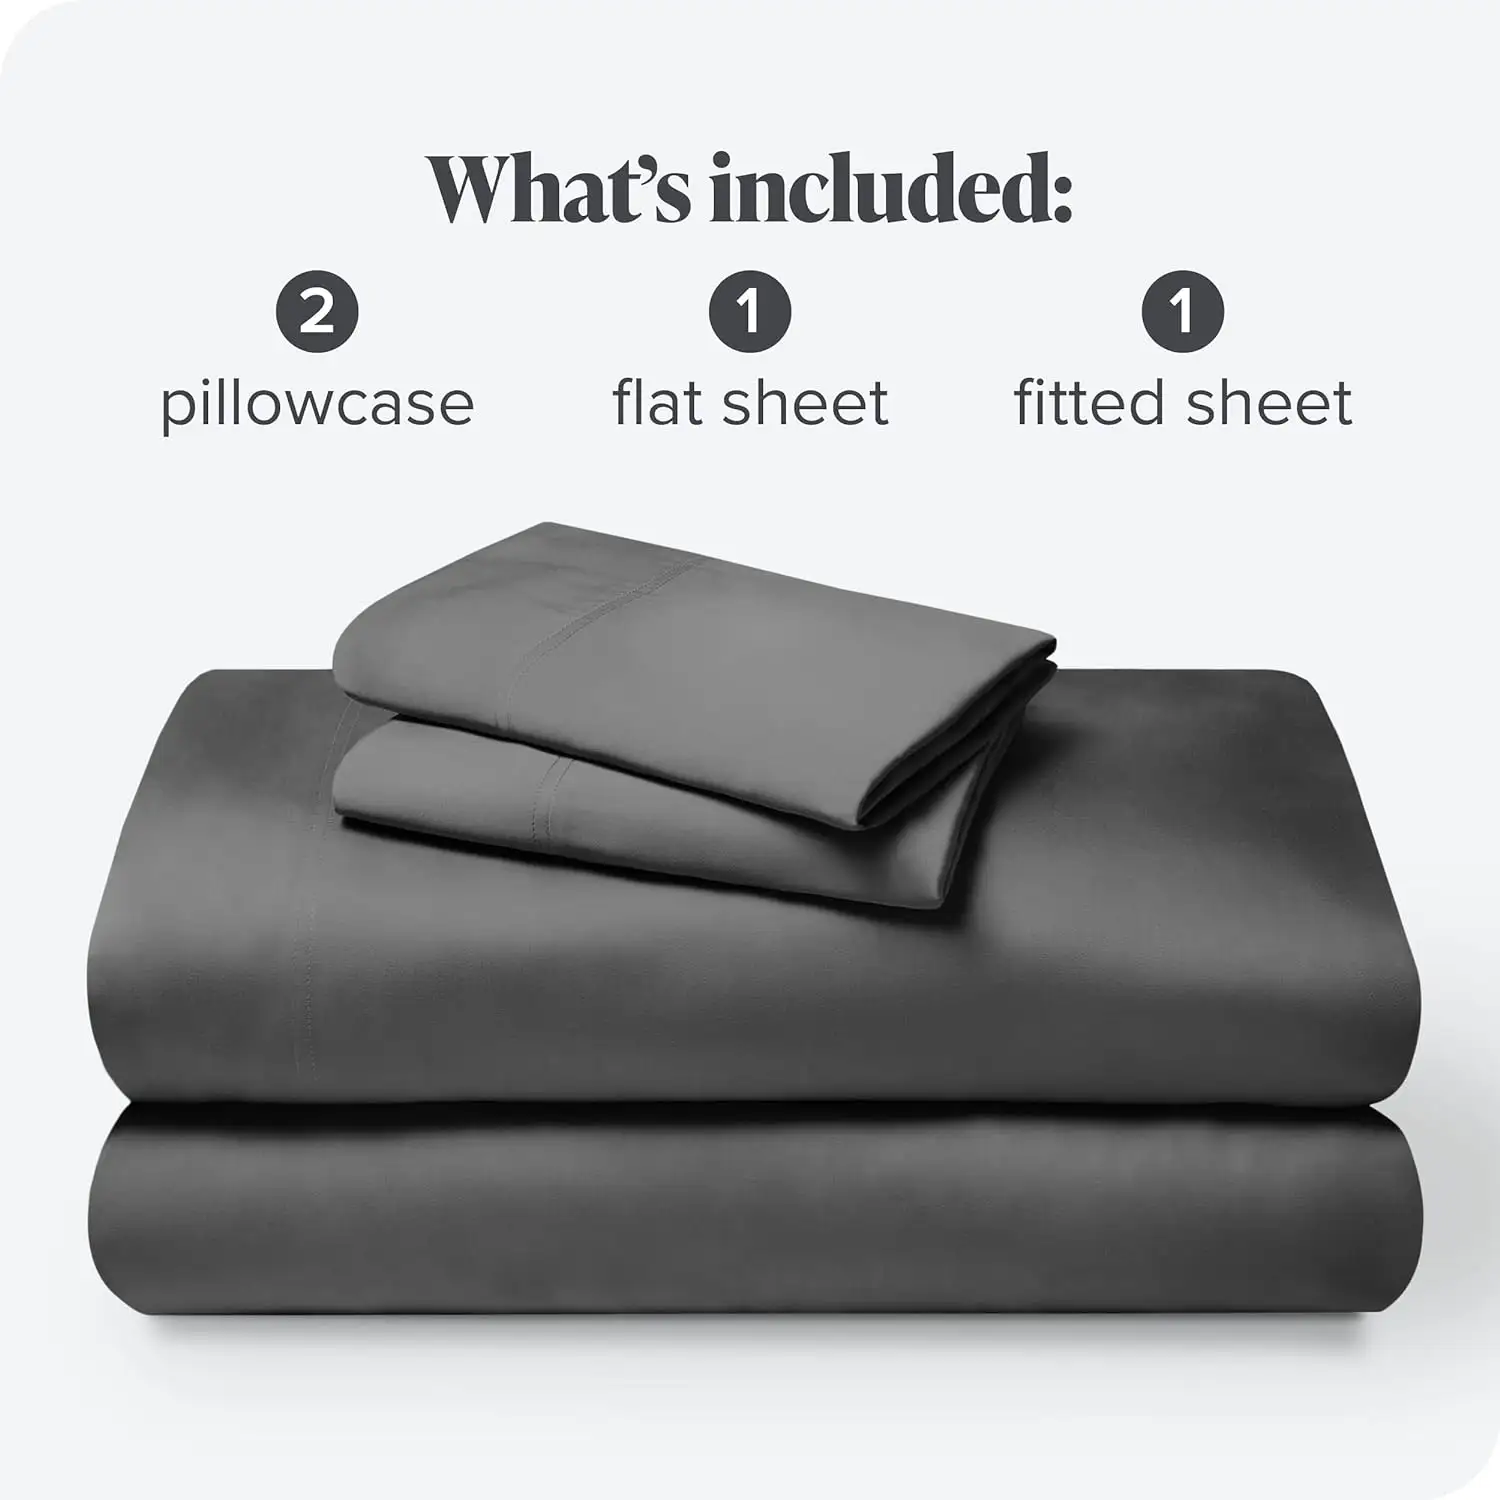 बादल भूमि बांस के बिस्तर की चादरें चार टुकड़े सेट थोक 100% कार्बनिक बांस से युक्त बेडशीट सेट चारकोल विकोज